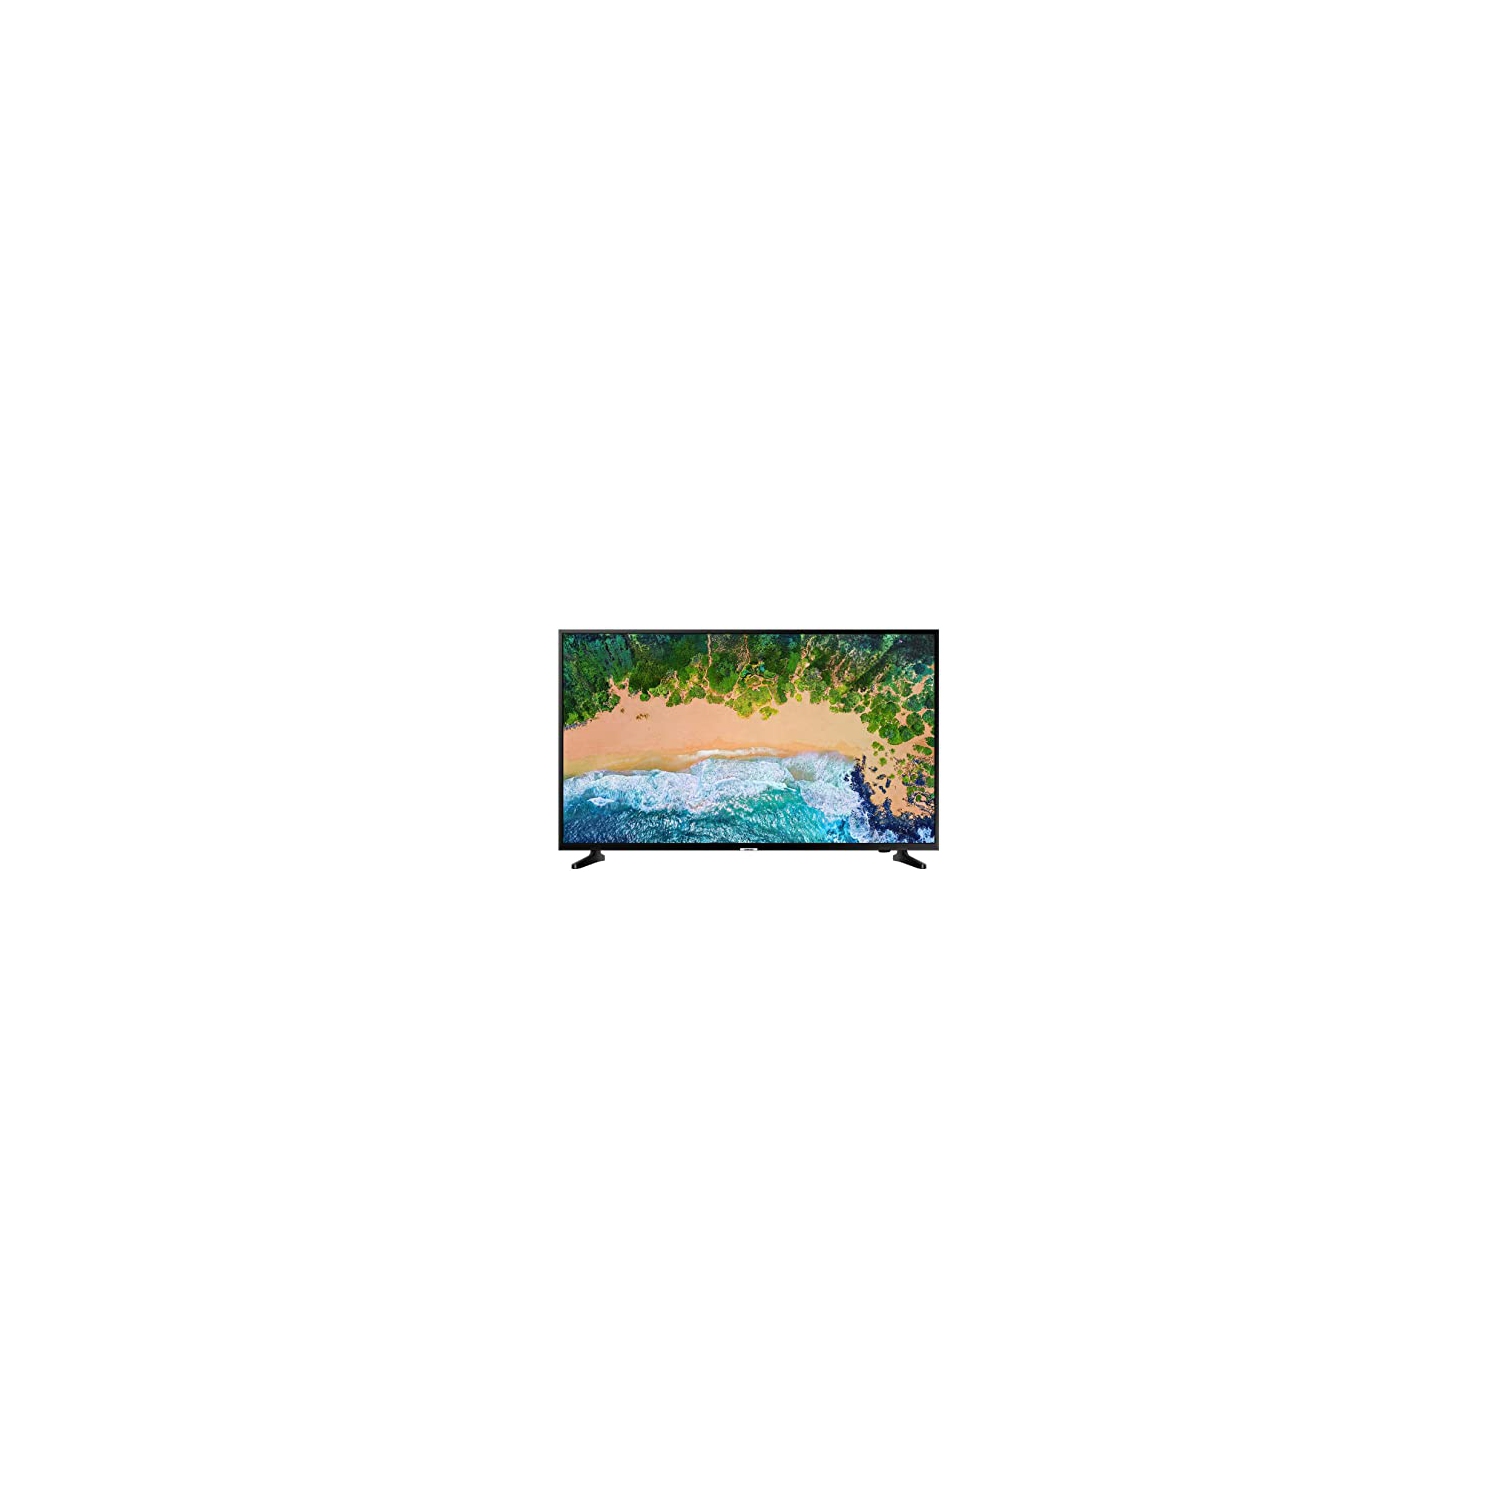 BBB-Samsung 55" 4K UHD HDR LED Tizen Smart TV